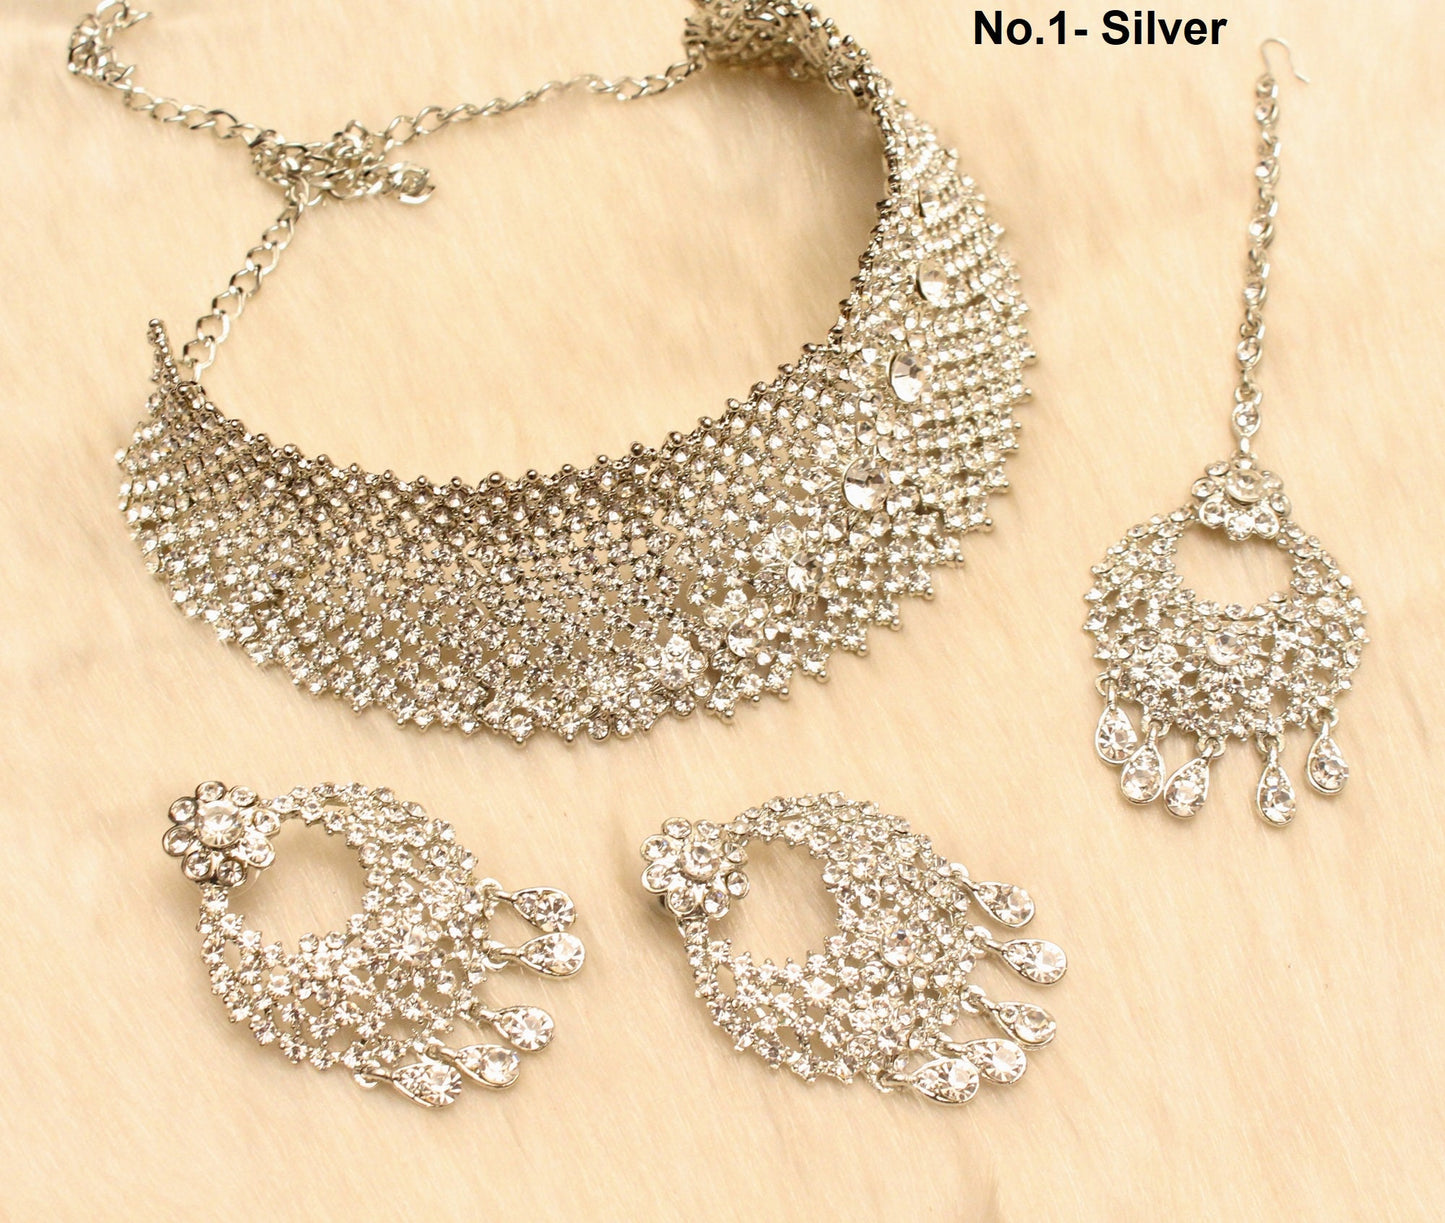 Silber Choker / Silber Choker Halskette Set / Bollywood Halskette Set / Indische Choker Halskette Set / Silber Brautjungfern Schmuck / Frauen Halskette